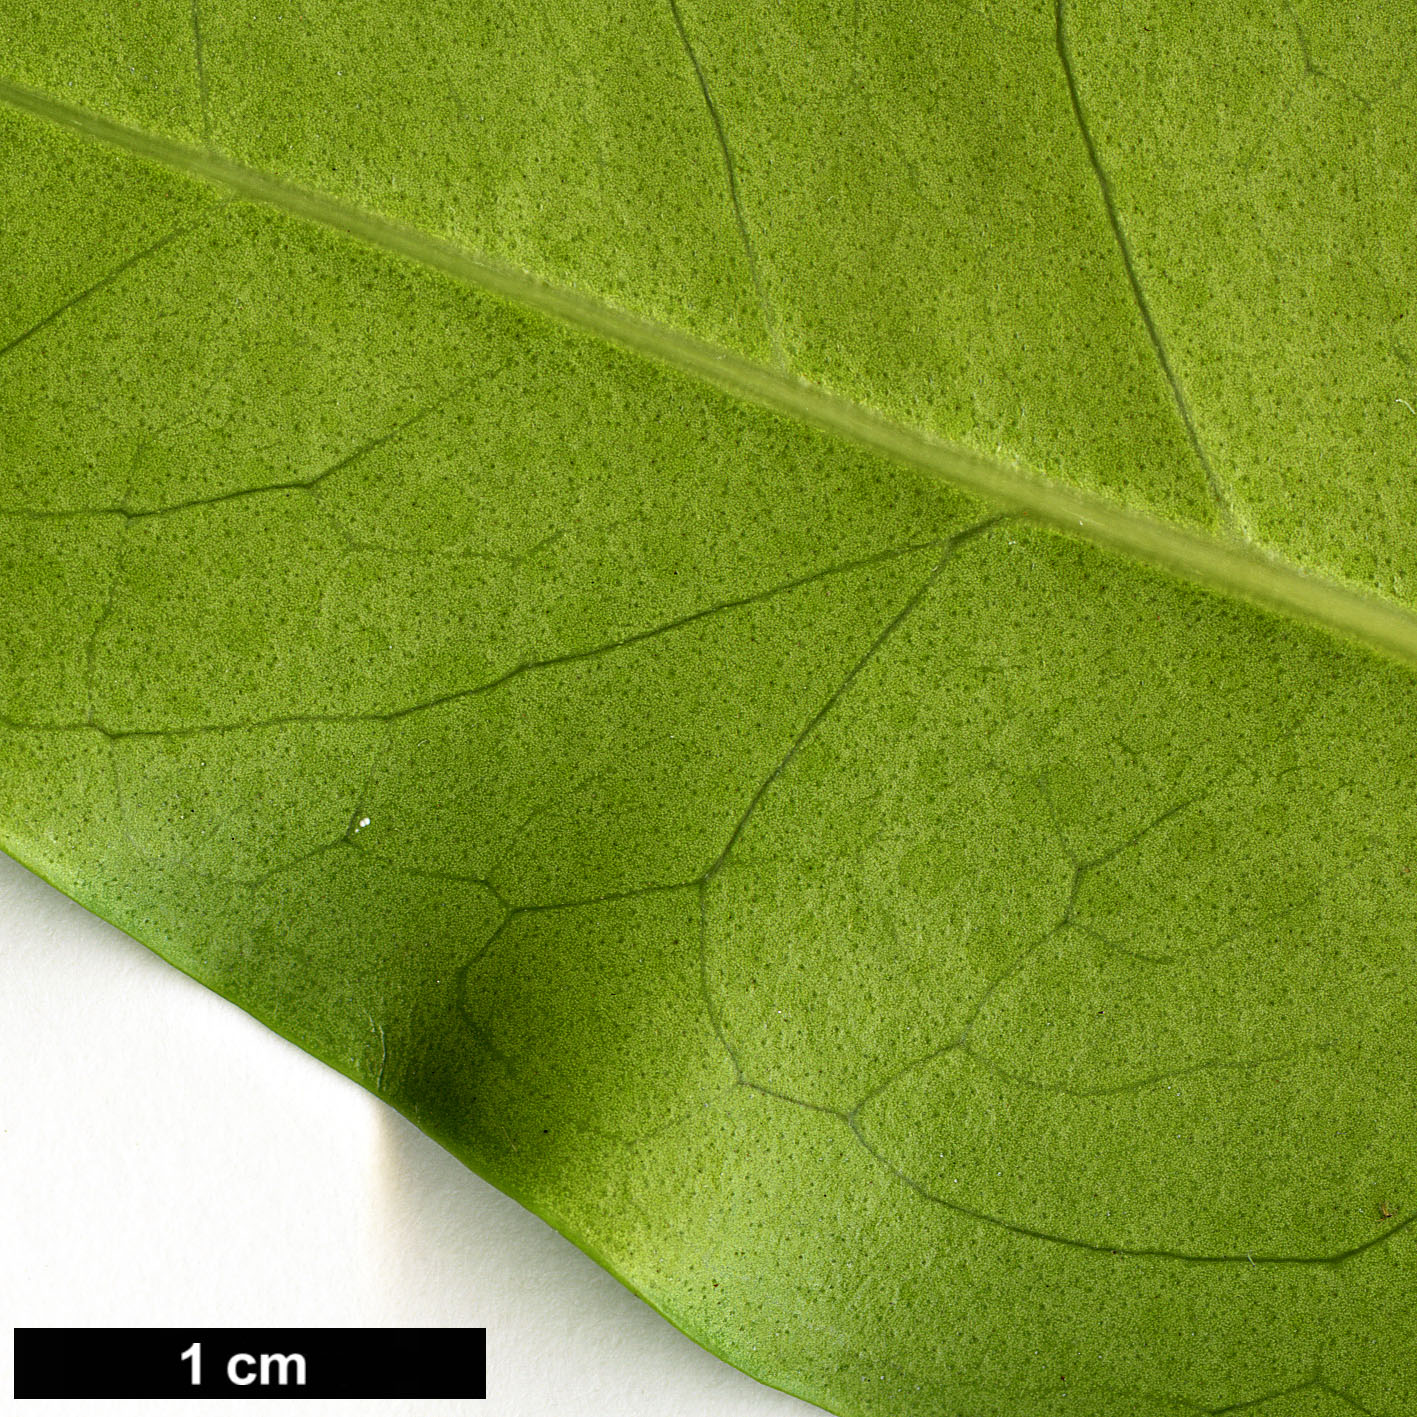 High resolution image: Family: Oleaceae - Genus: Nestegis - Taxon: apetala